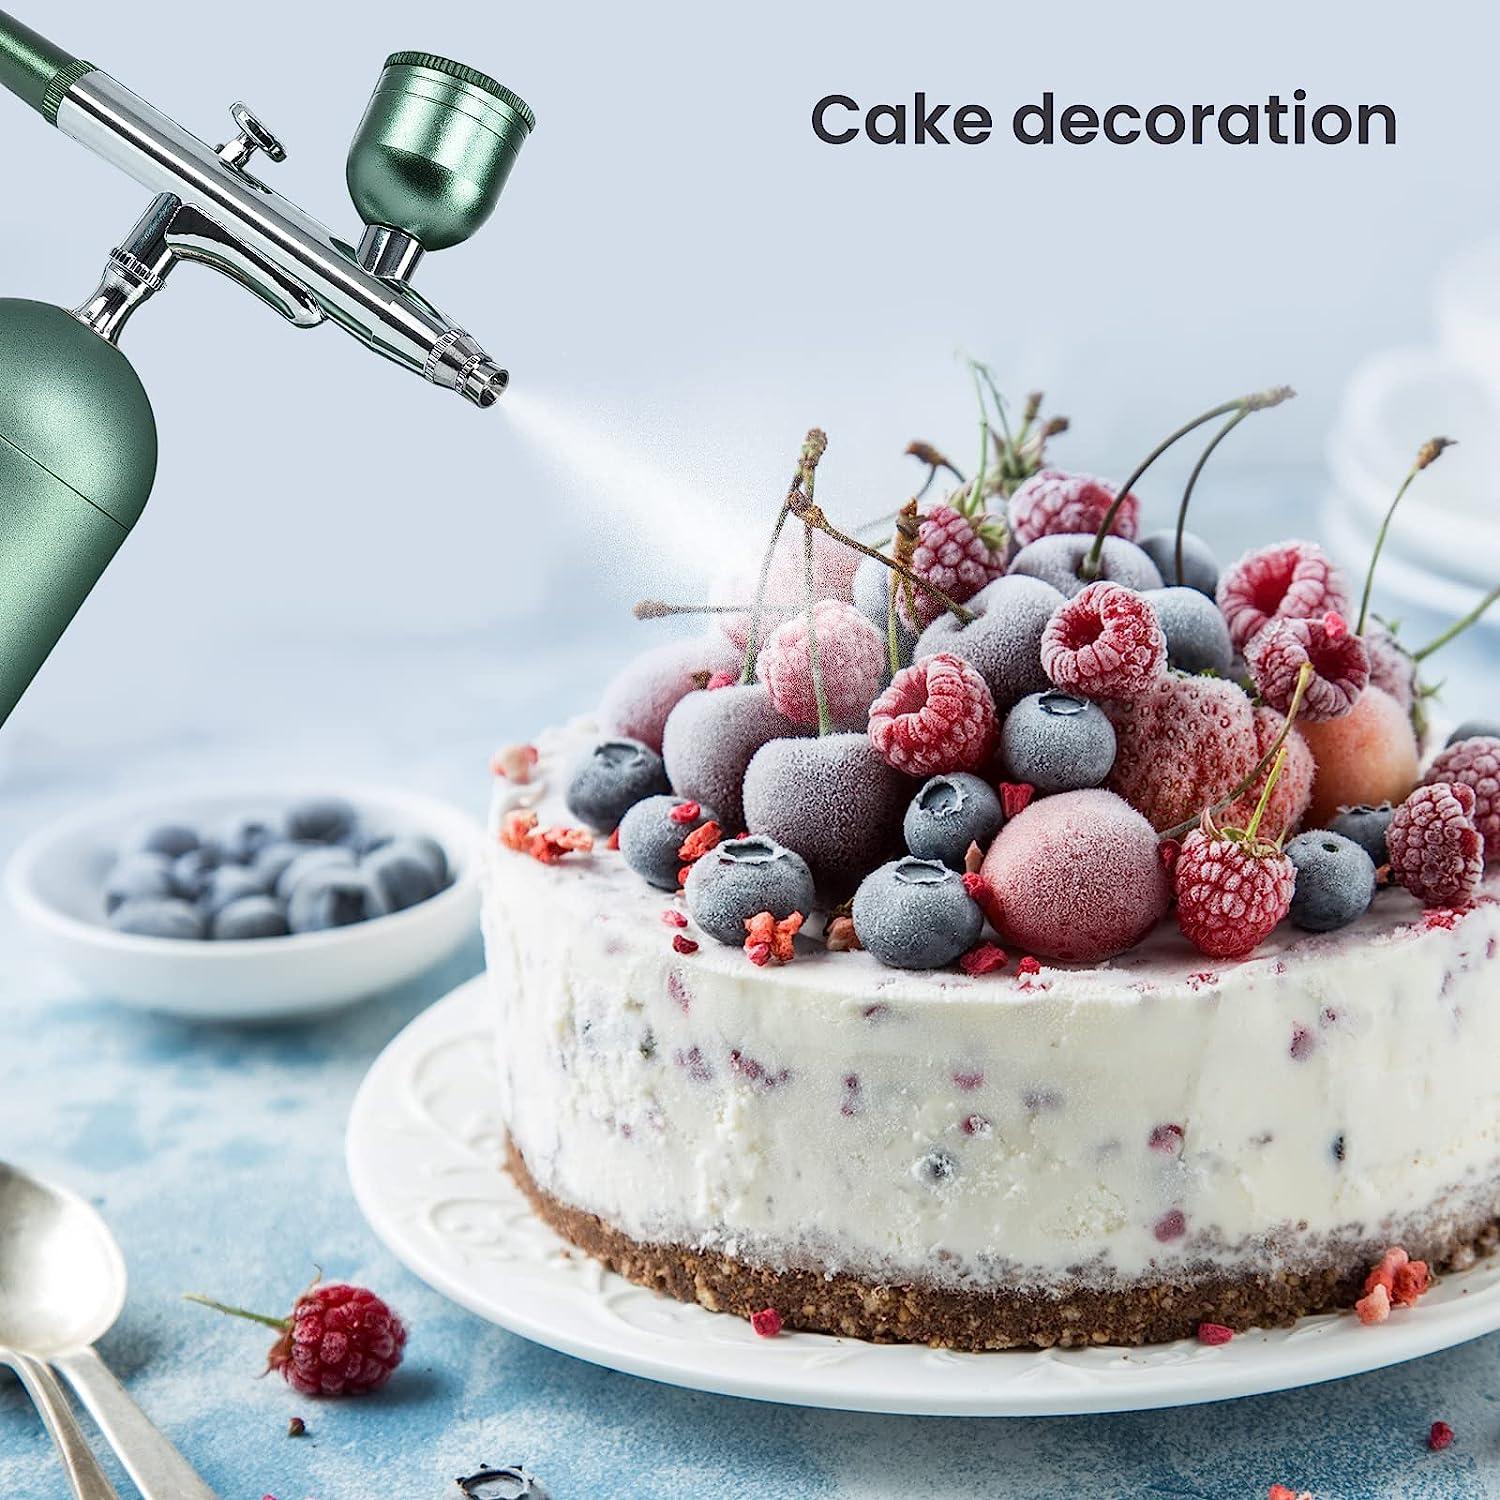 Airbrush Gun Cake Decorating, Air Brush Cake Decorating